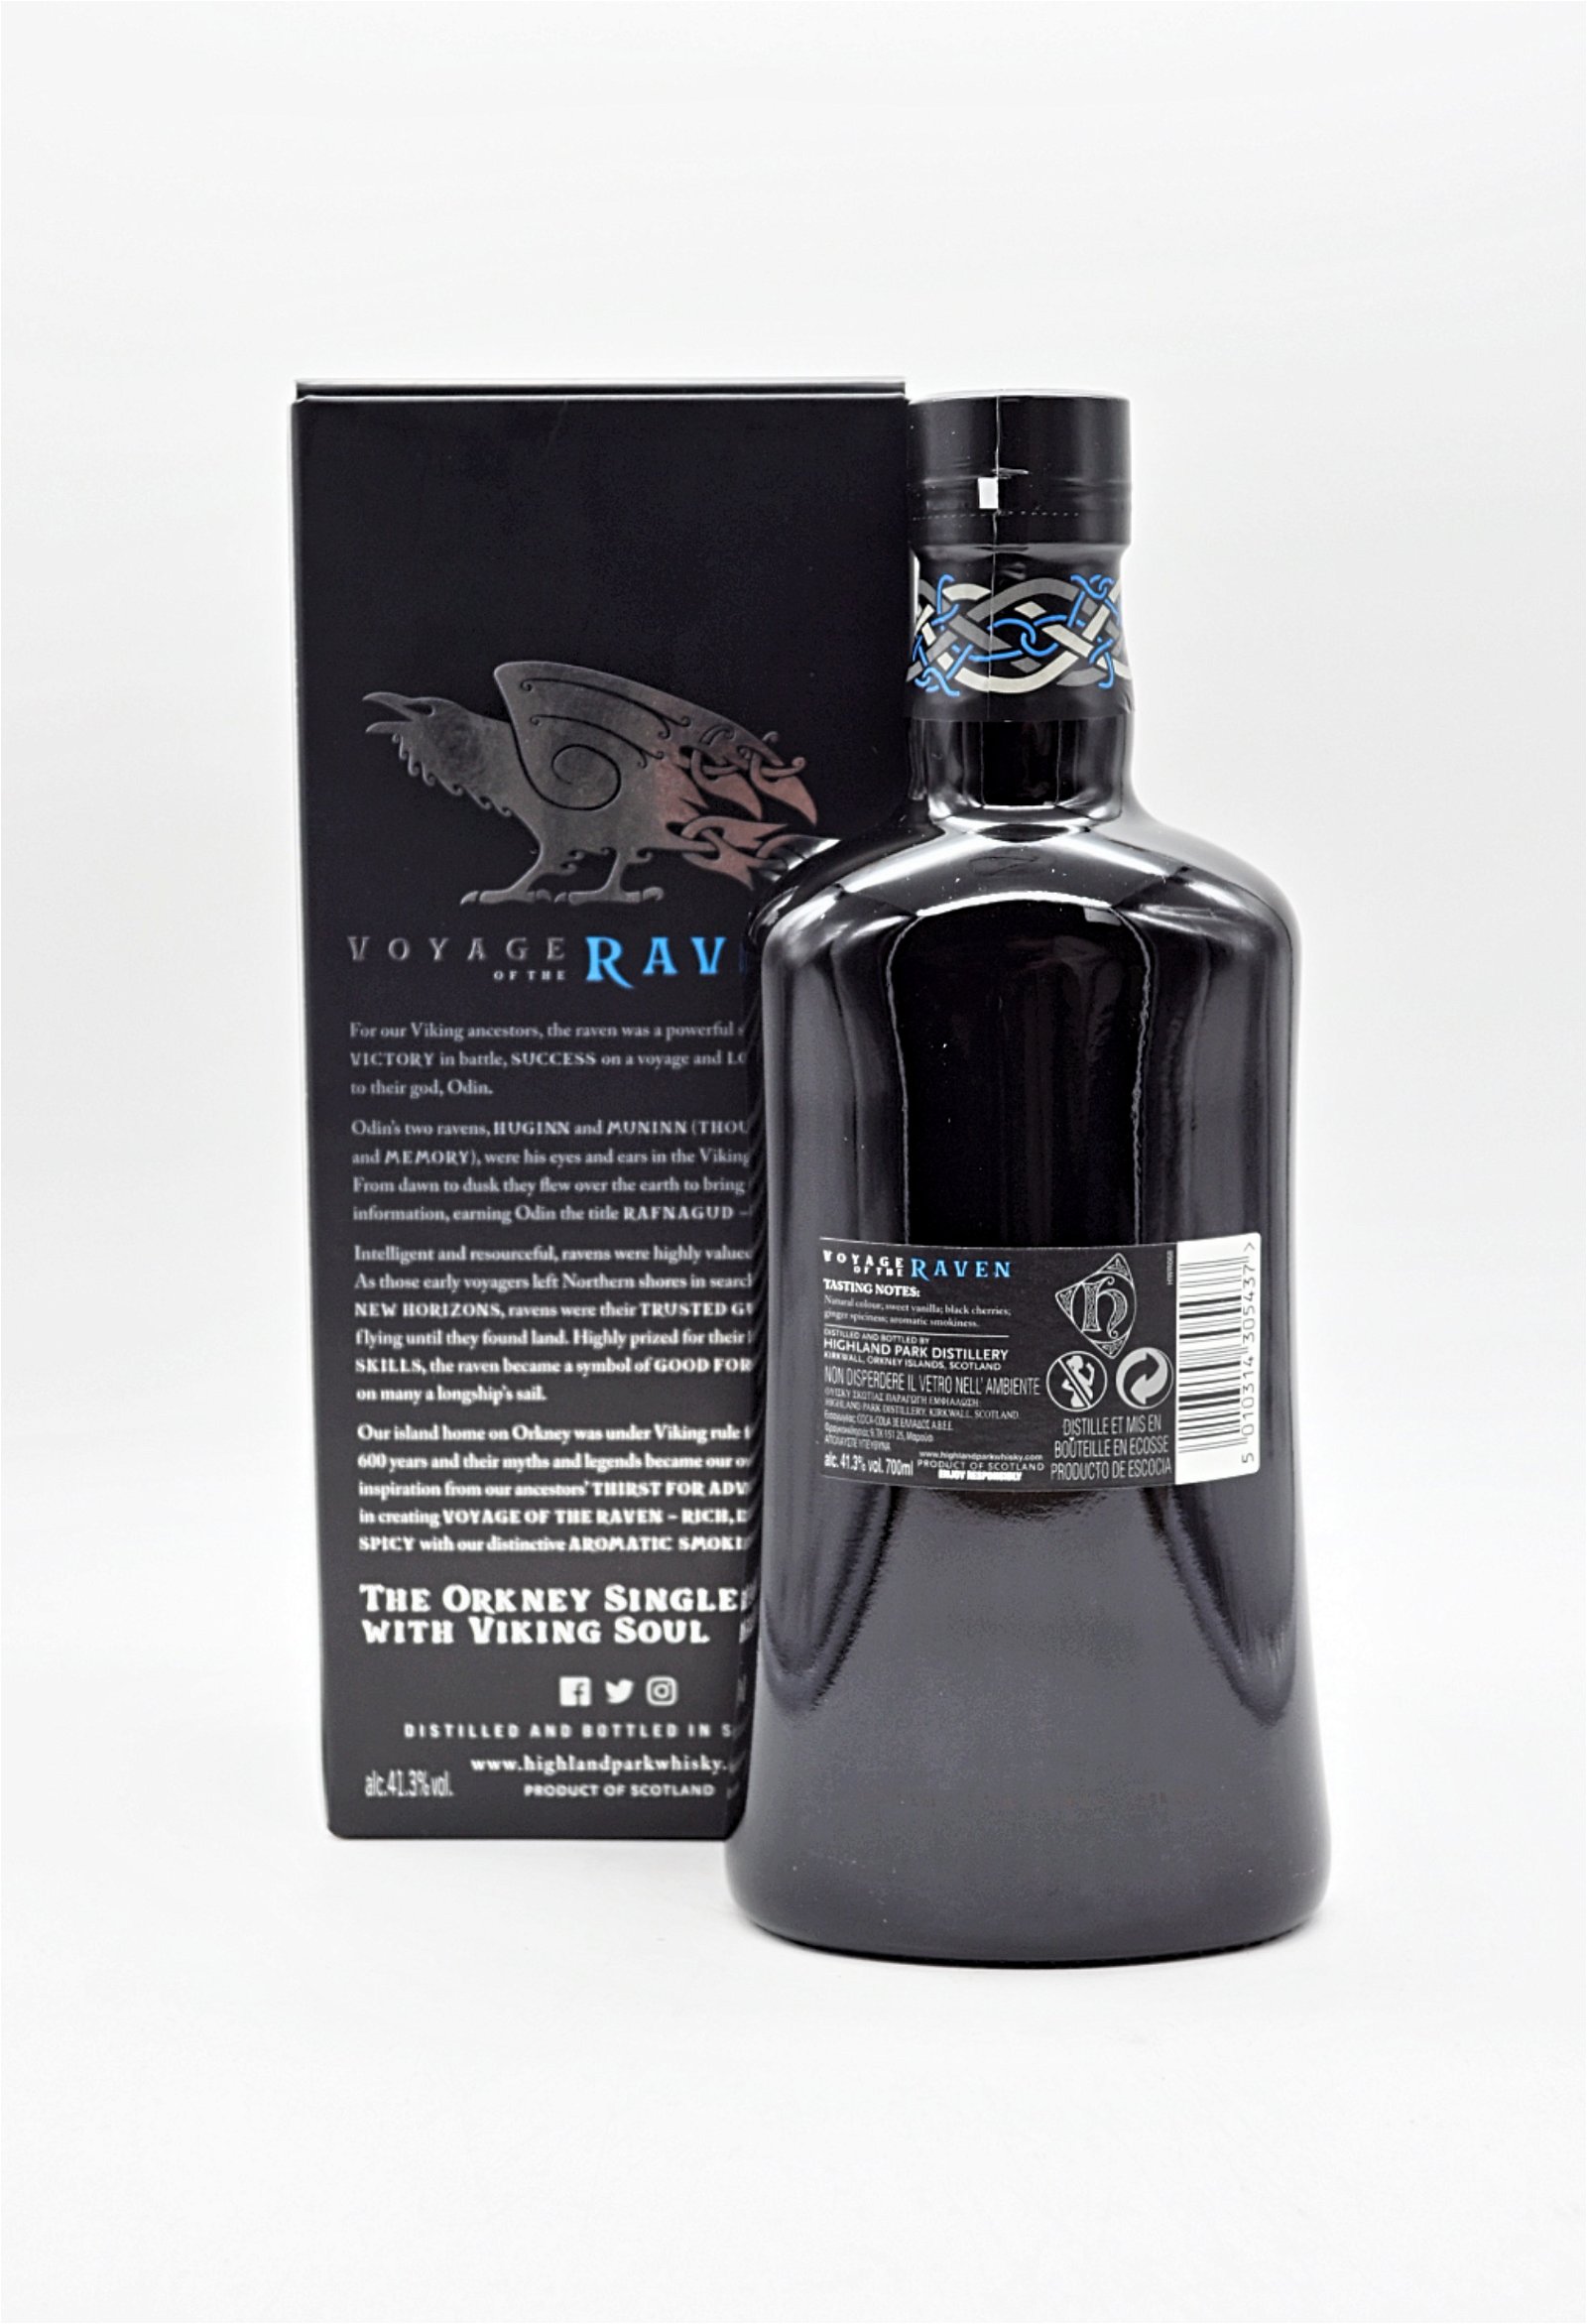 Highland Park Voyage of the Raven Single Malt Scotch Whisky